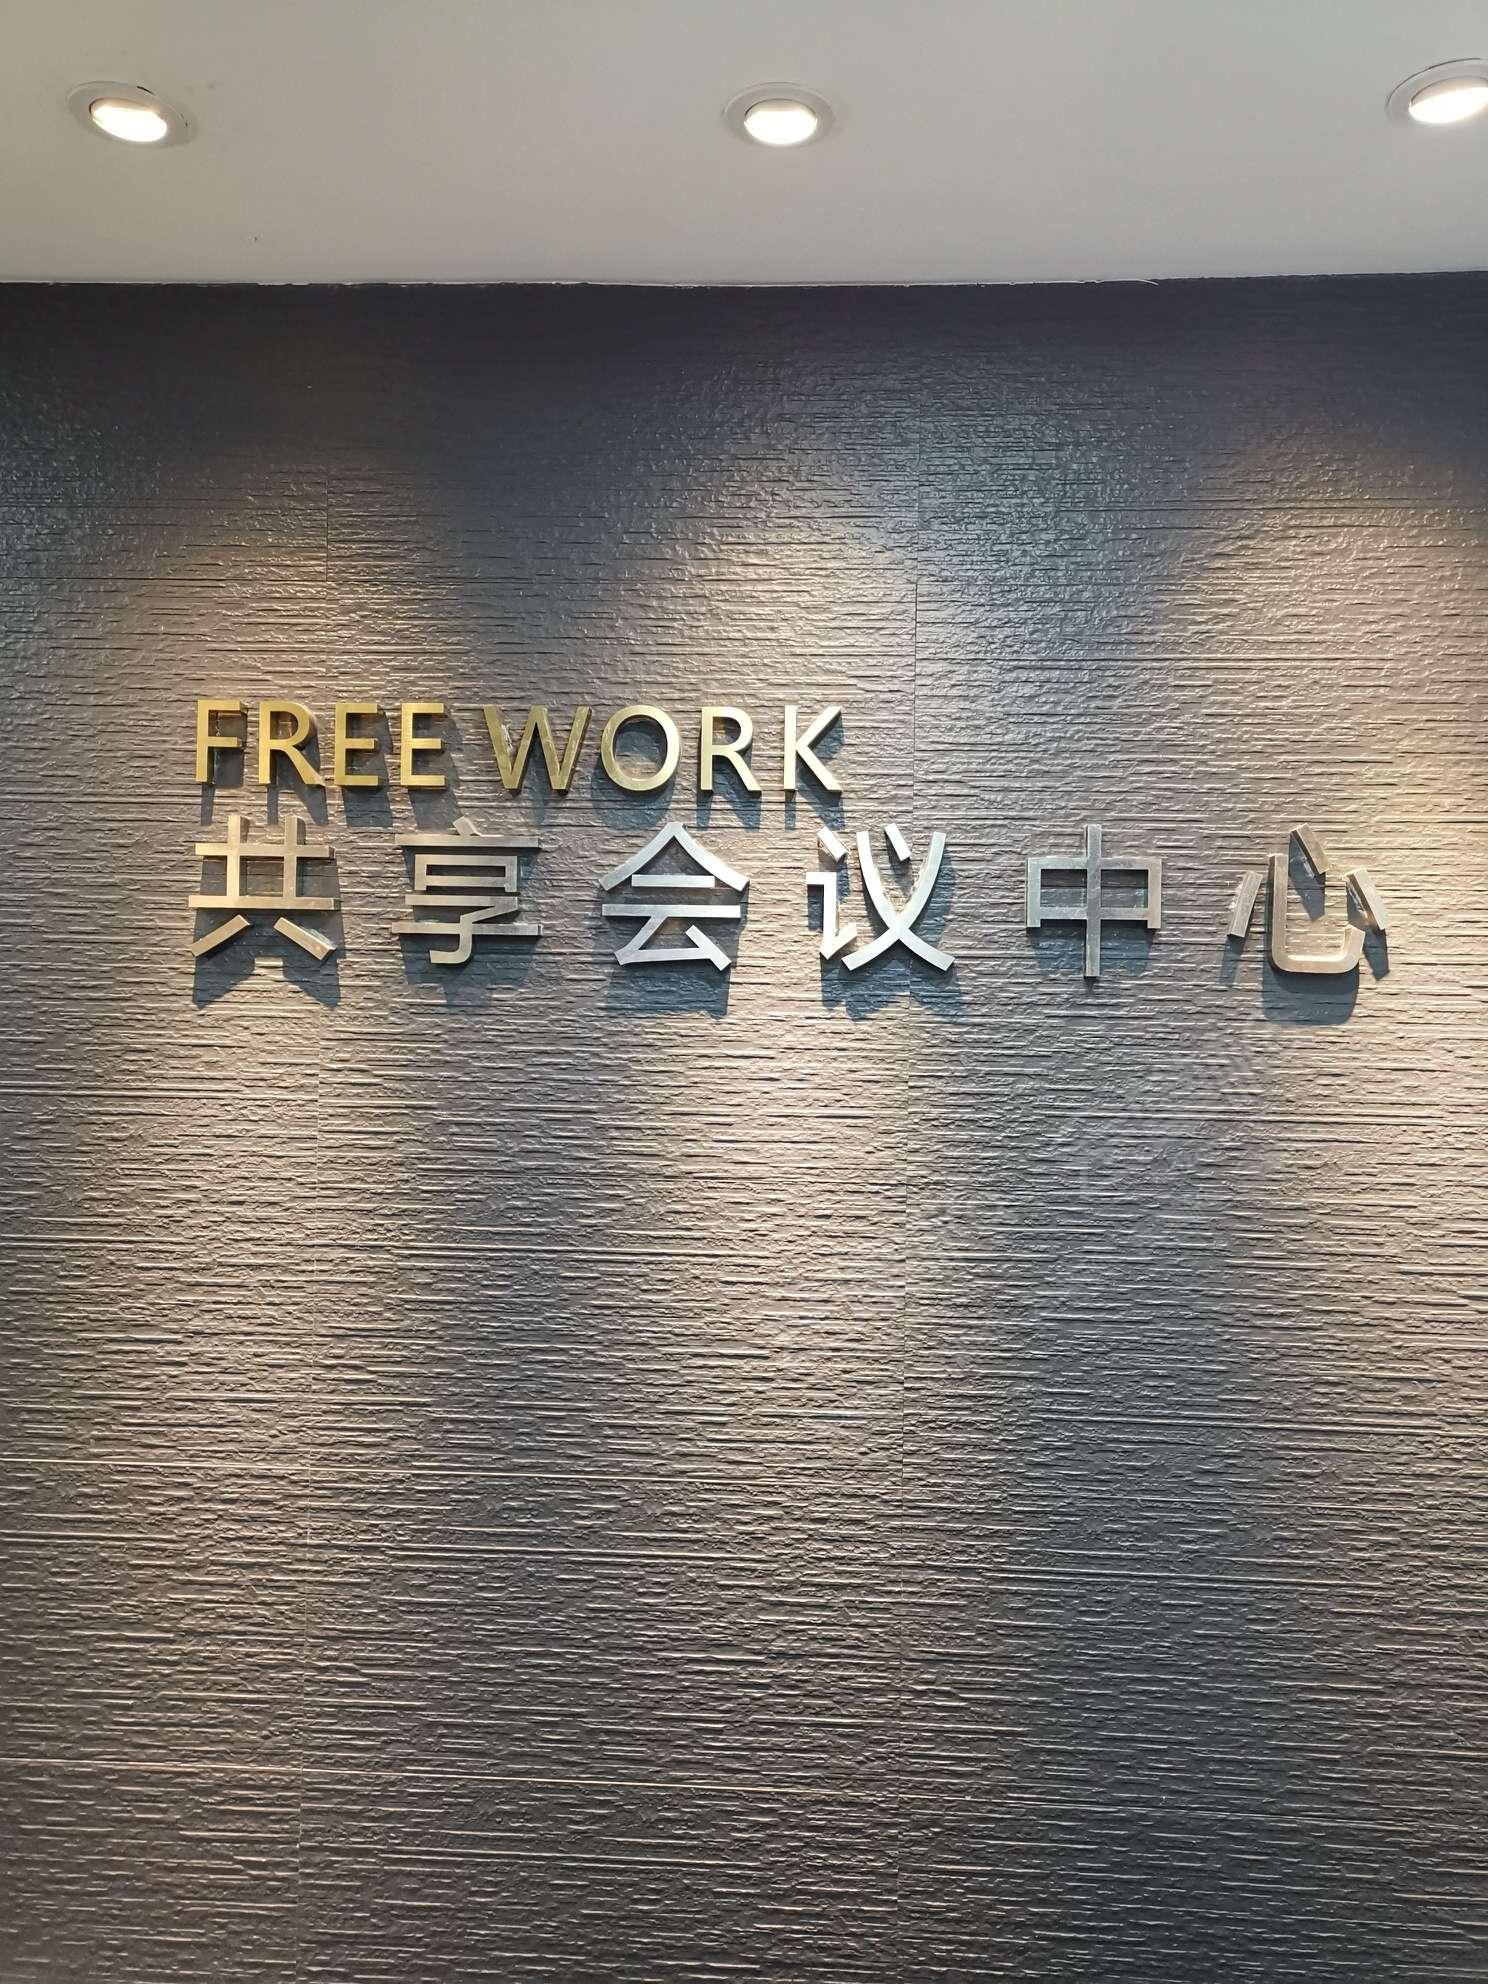 上海FREE WORK共享会议中心怎么样?上海FREE WORK共享会议中心联系方式?